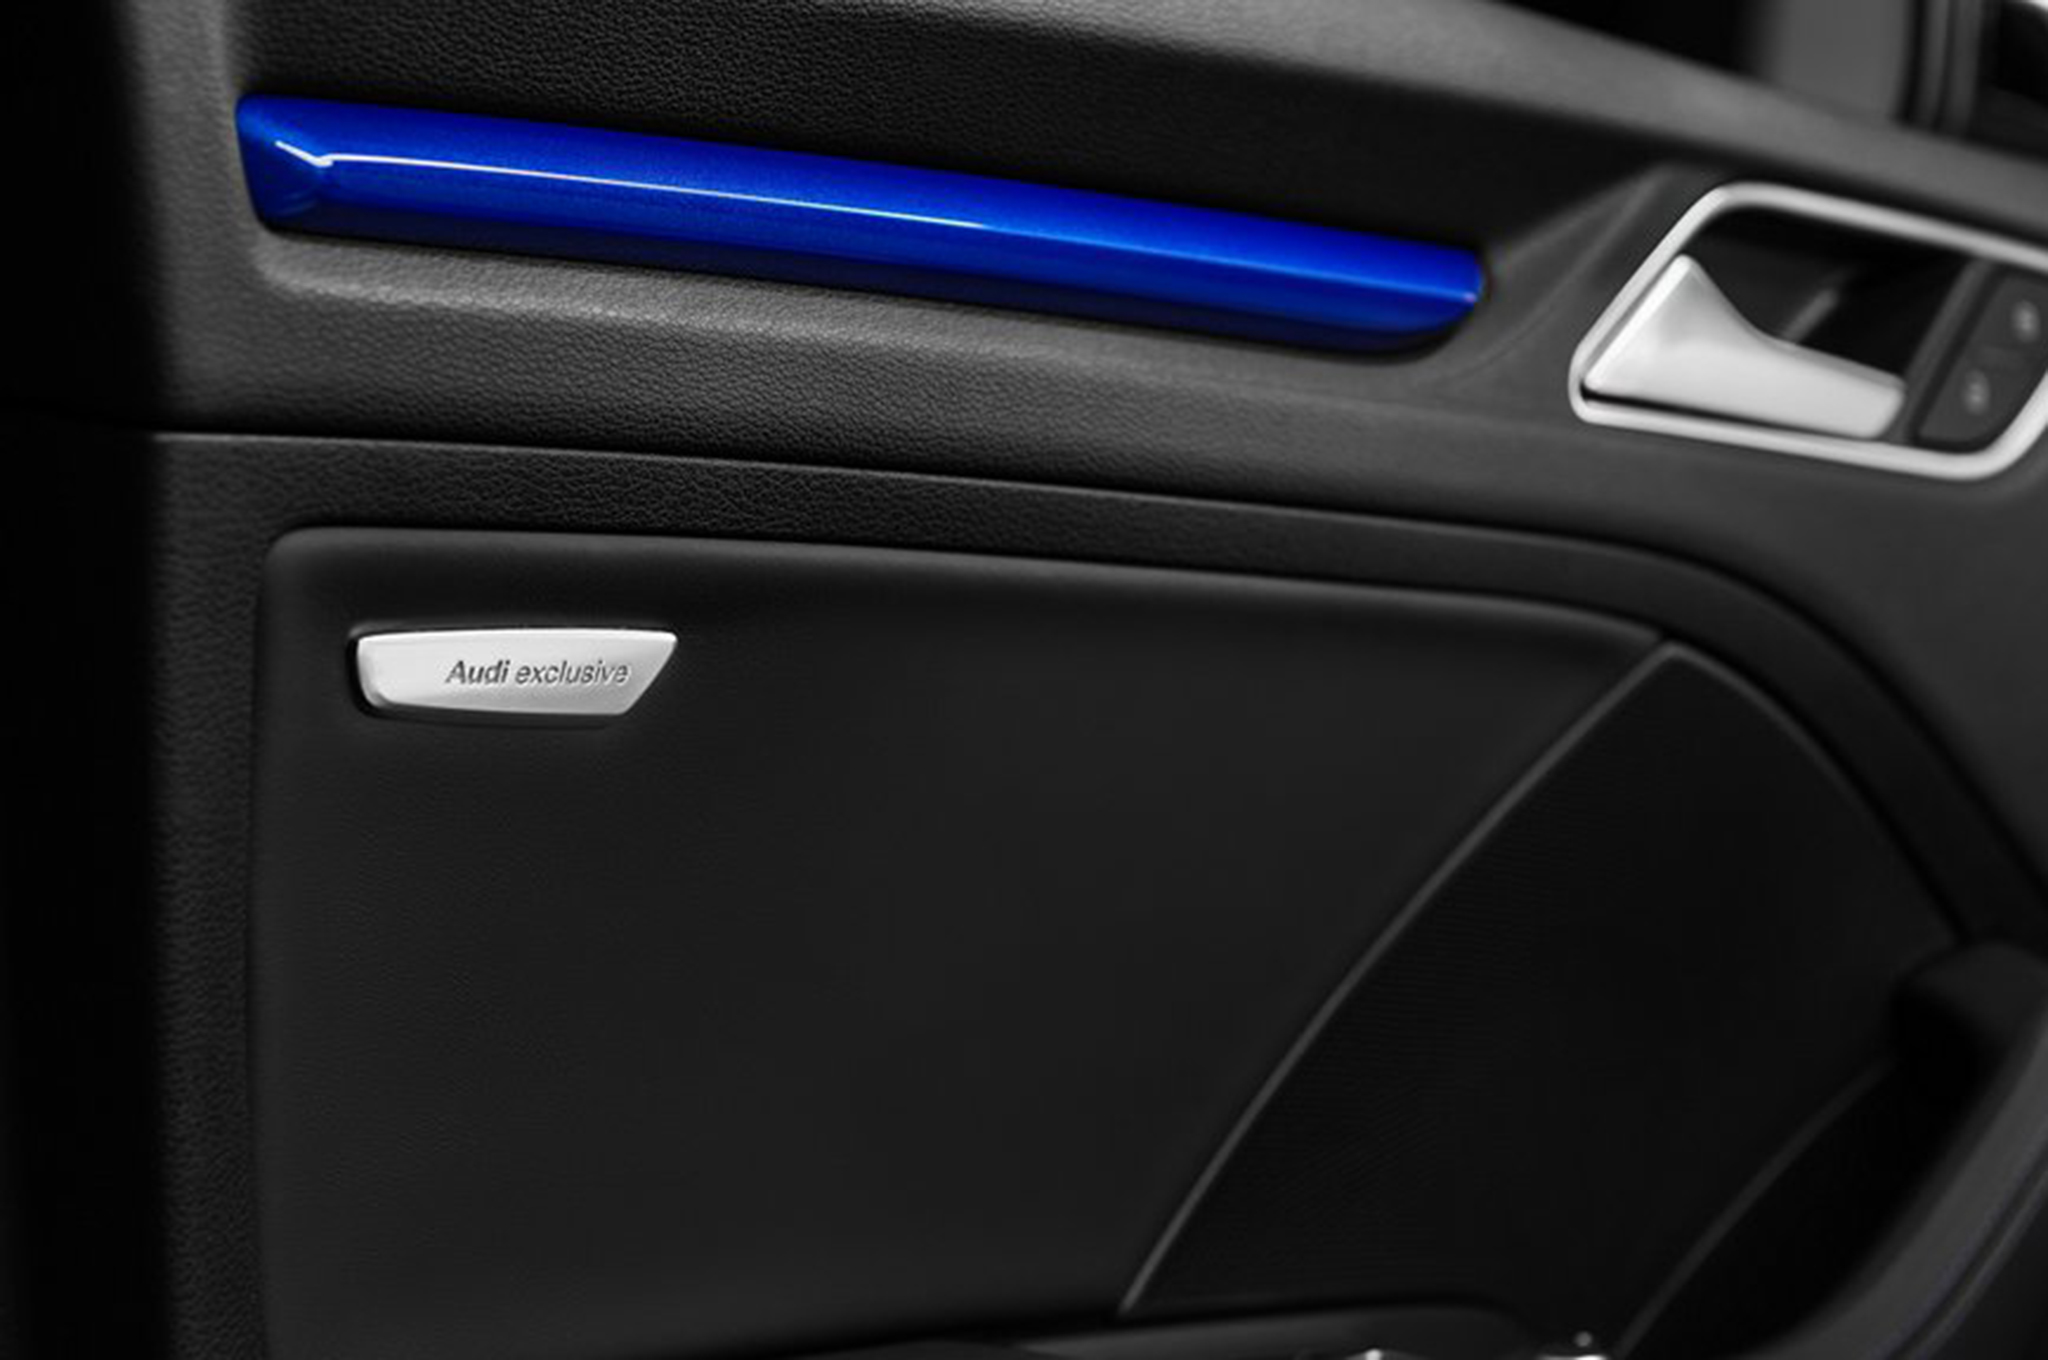 2015 Audi S3 exclusive edition blue door